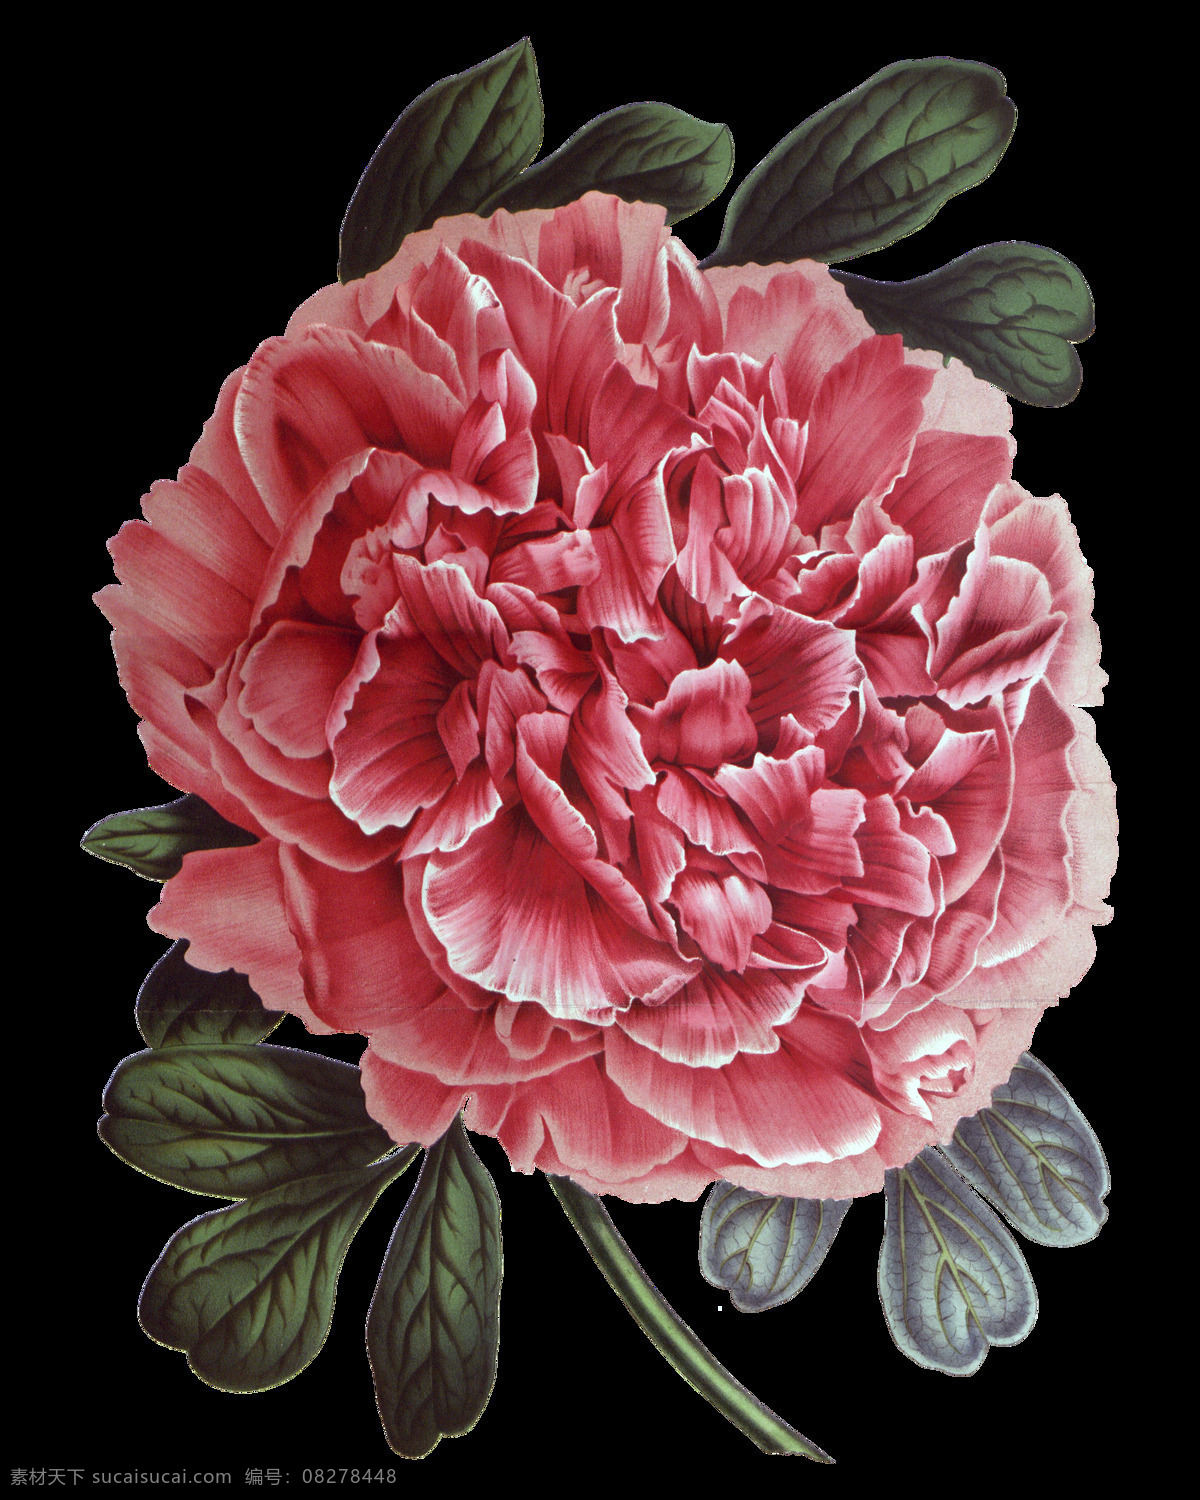 高清 红色 牡丹 花朵 装饰 元素 含苞待放 矢量花朵 矢量素材 手绘花朵素材 鲜花花蕾 鲜花素材花卉